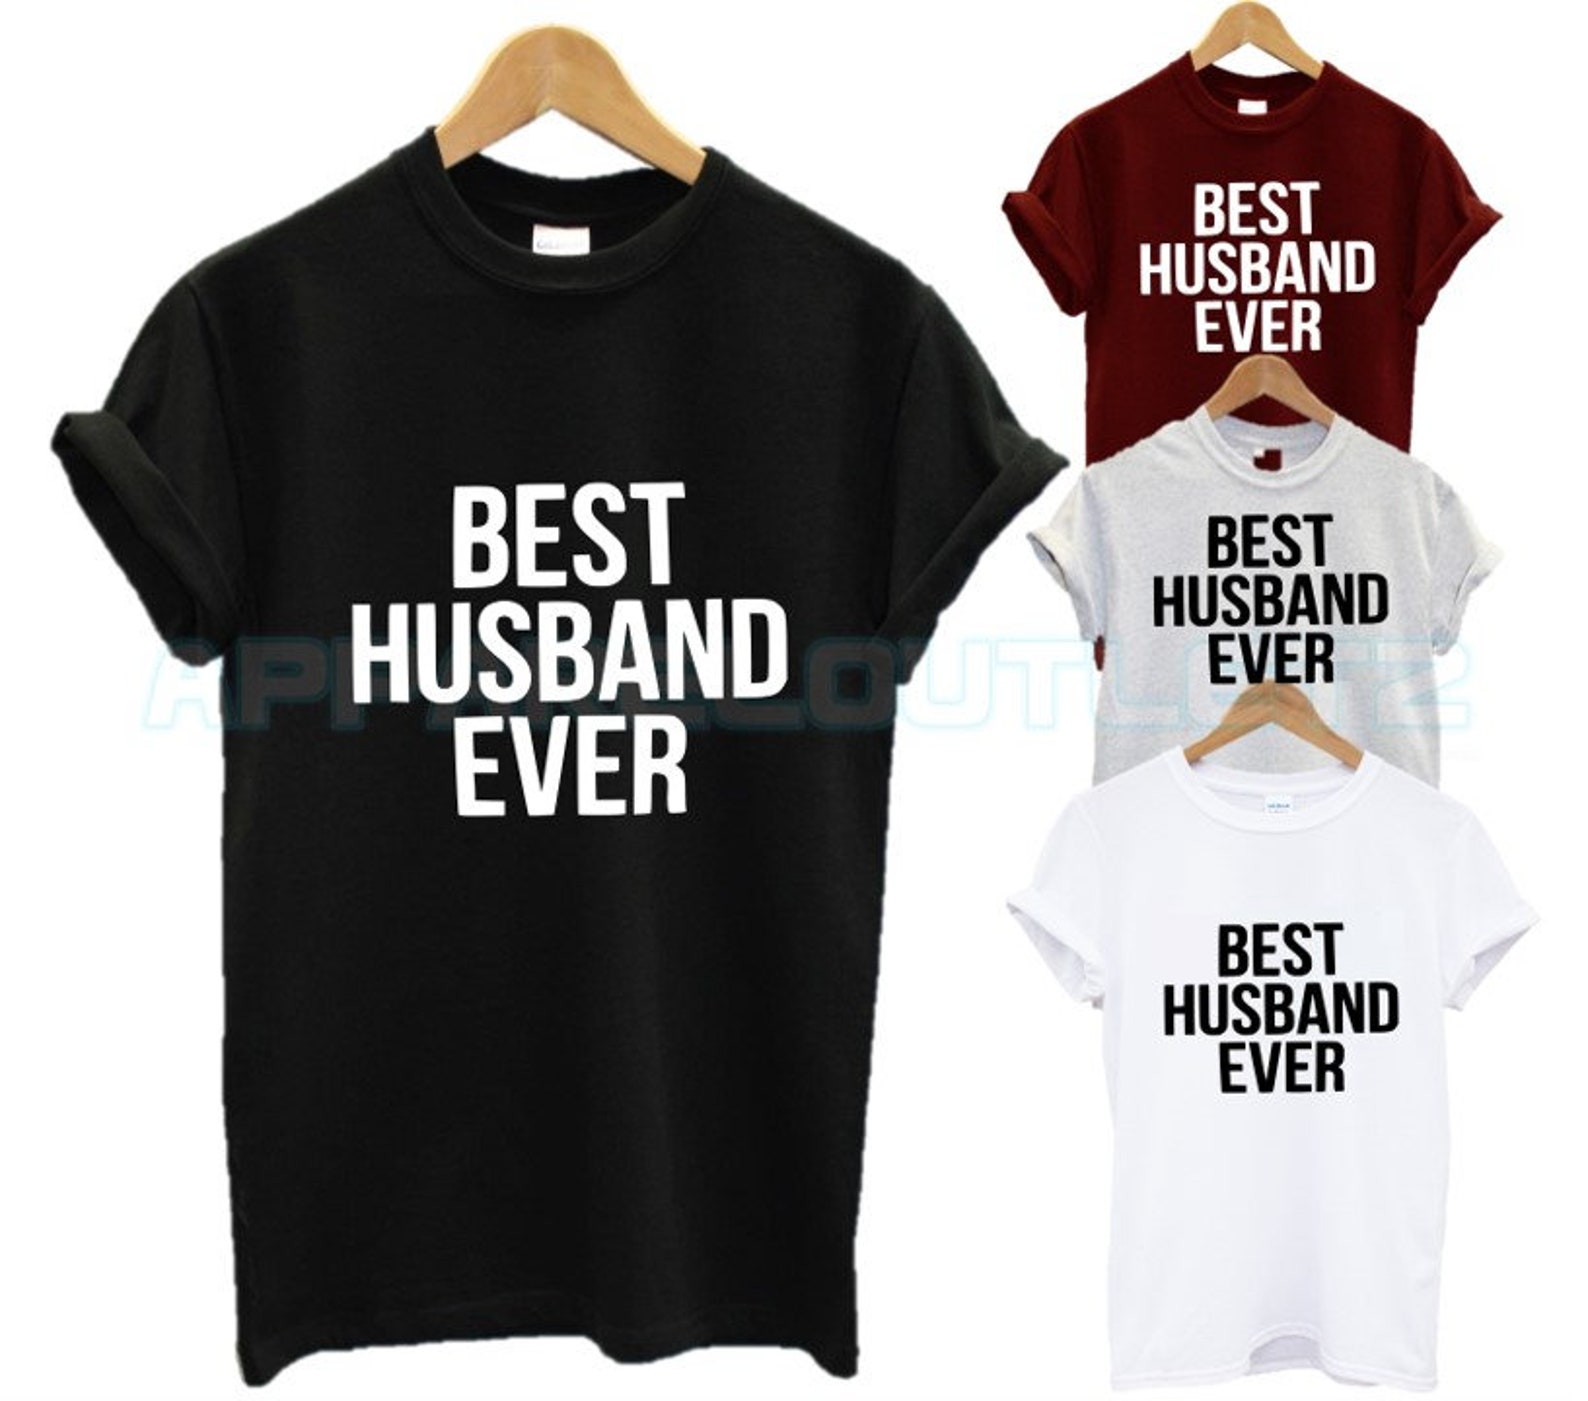 My husbands best friend. Best husband ever. The best husband ever wife футболки.